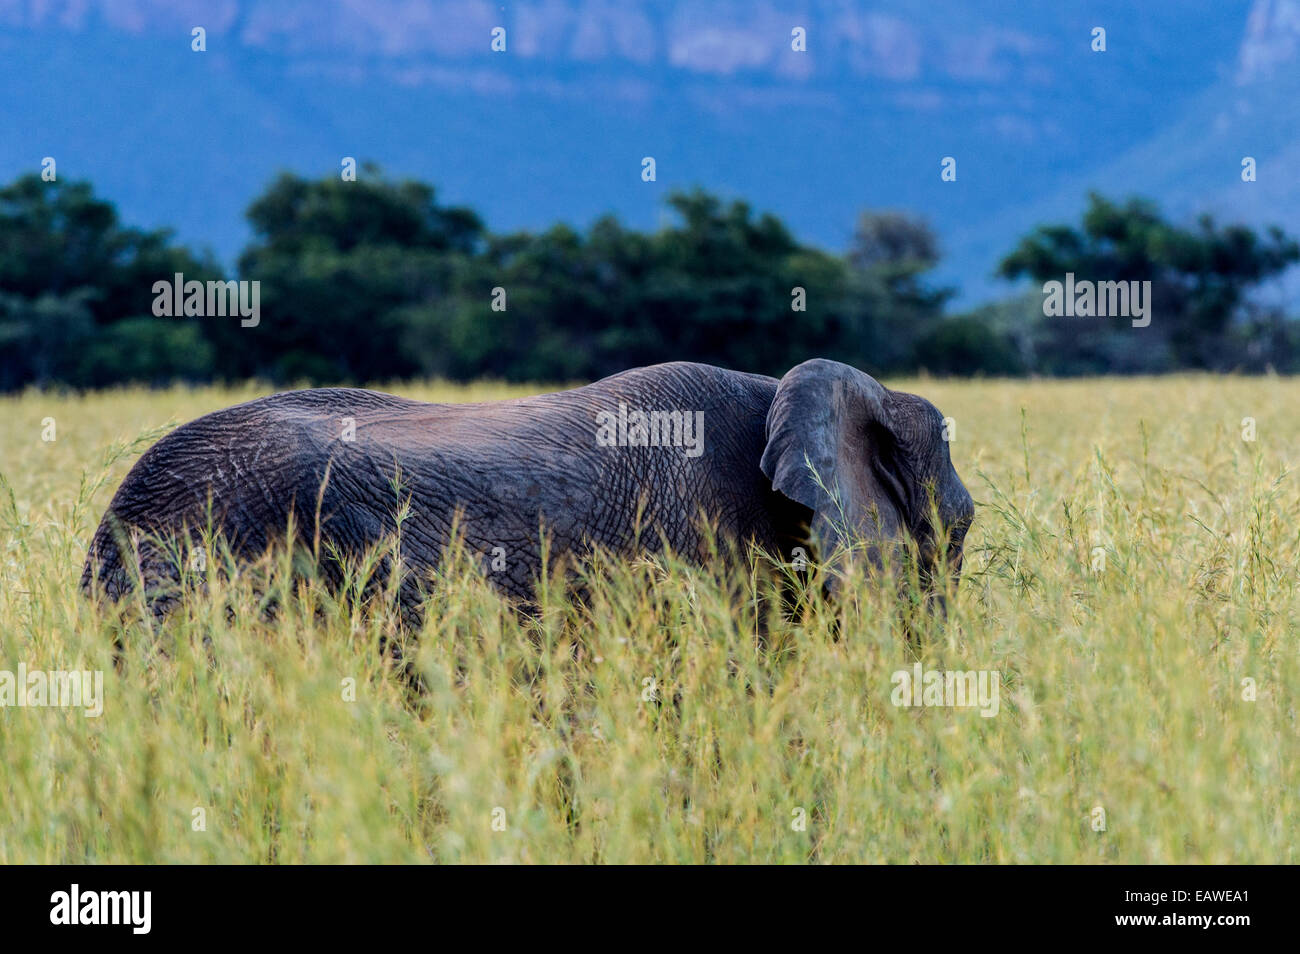 An African Elephant feeding on a plain of tall spear grass. Stock Photo